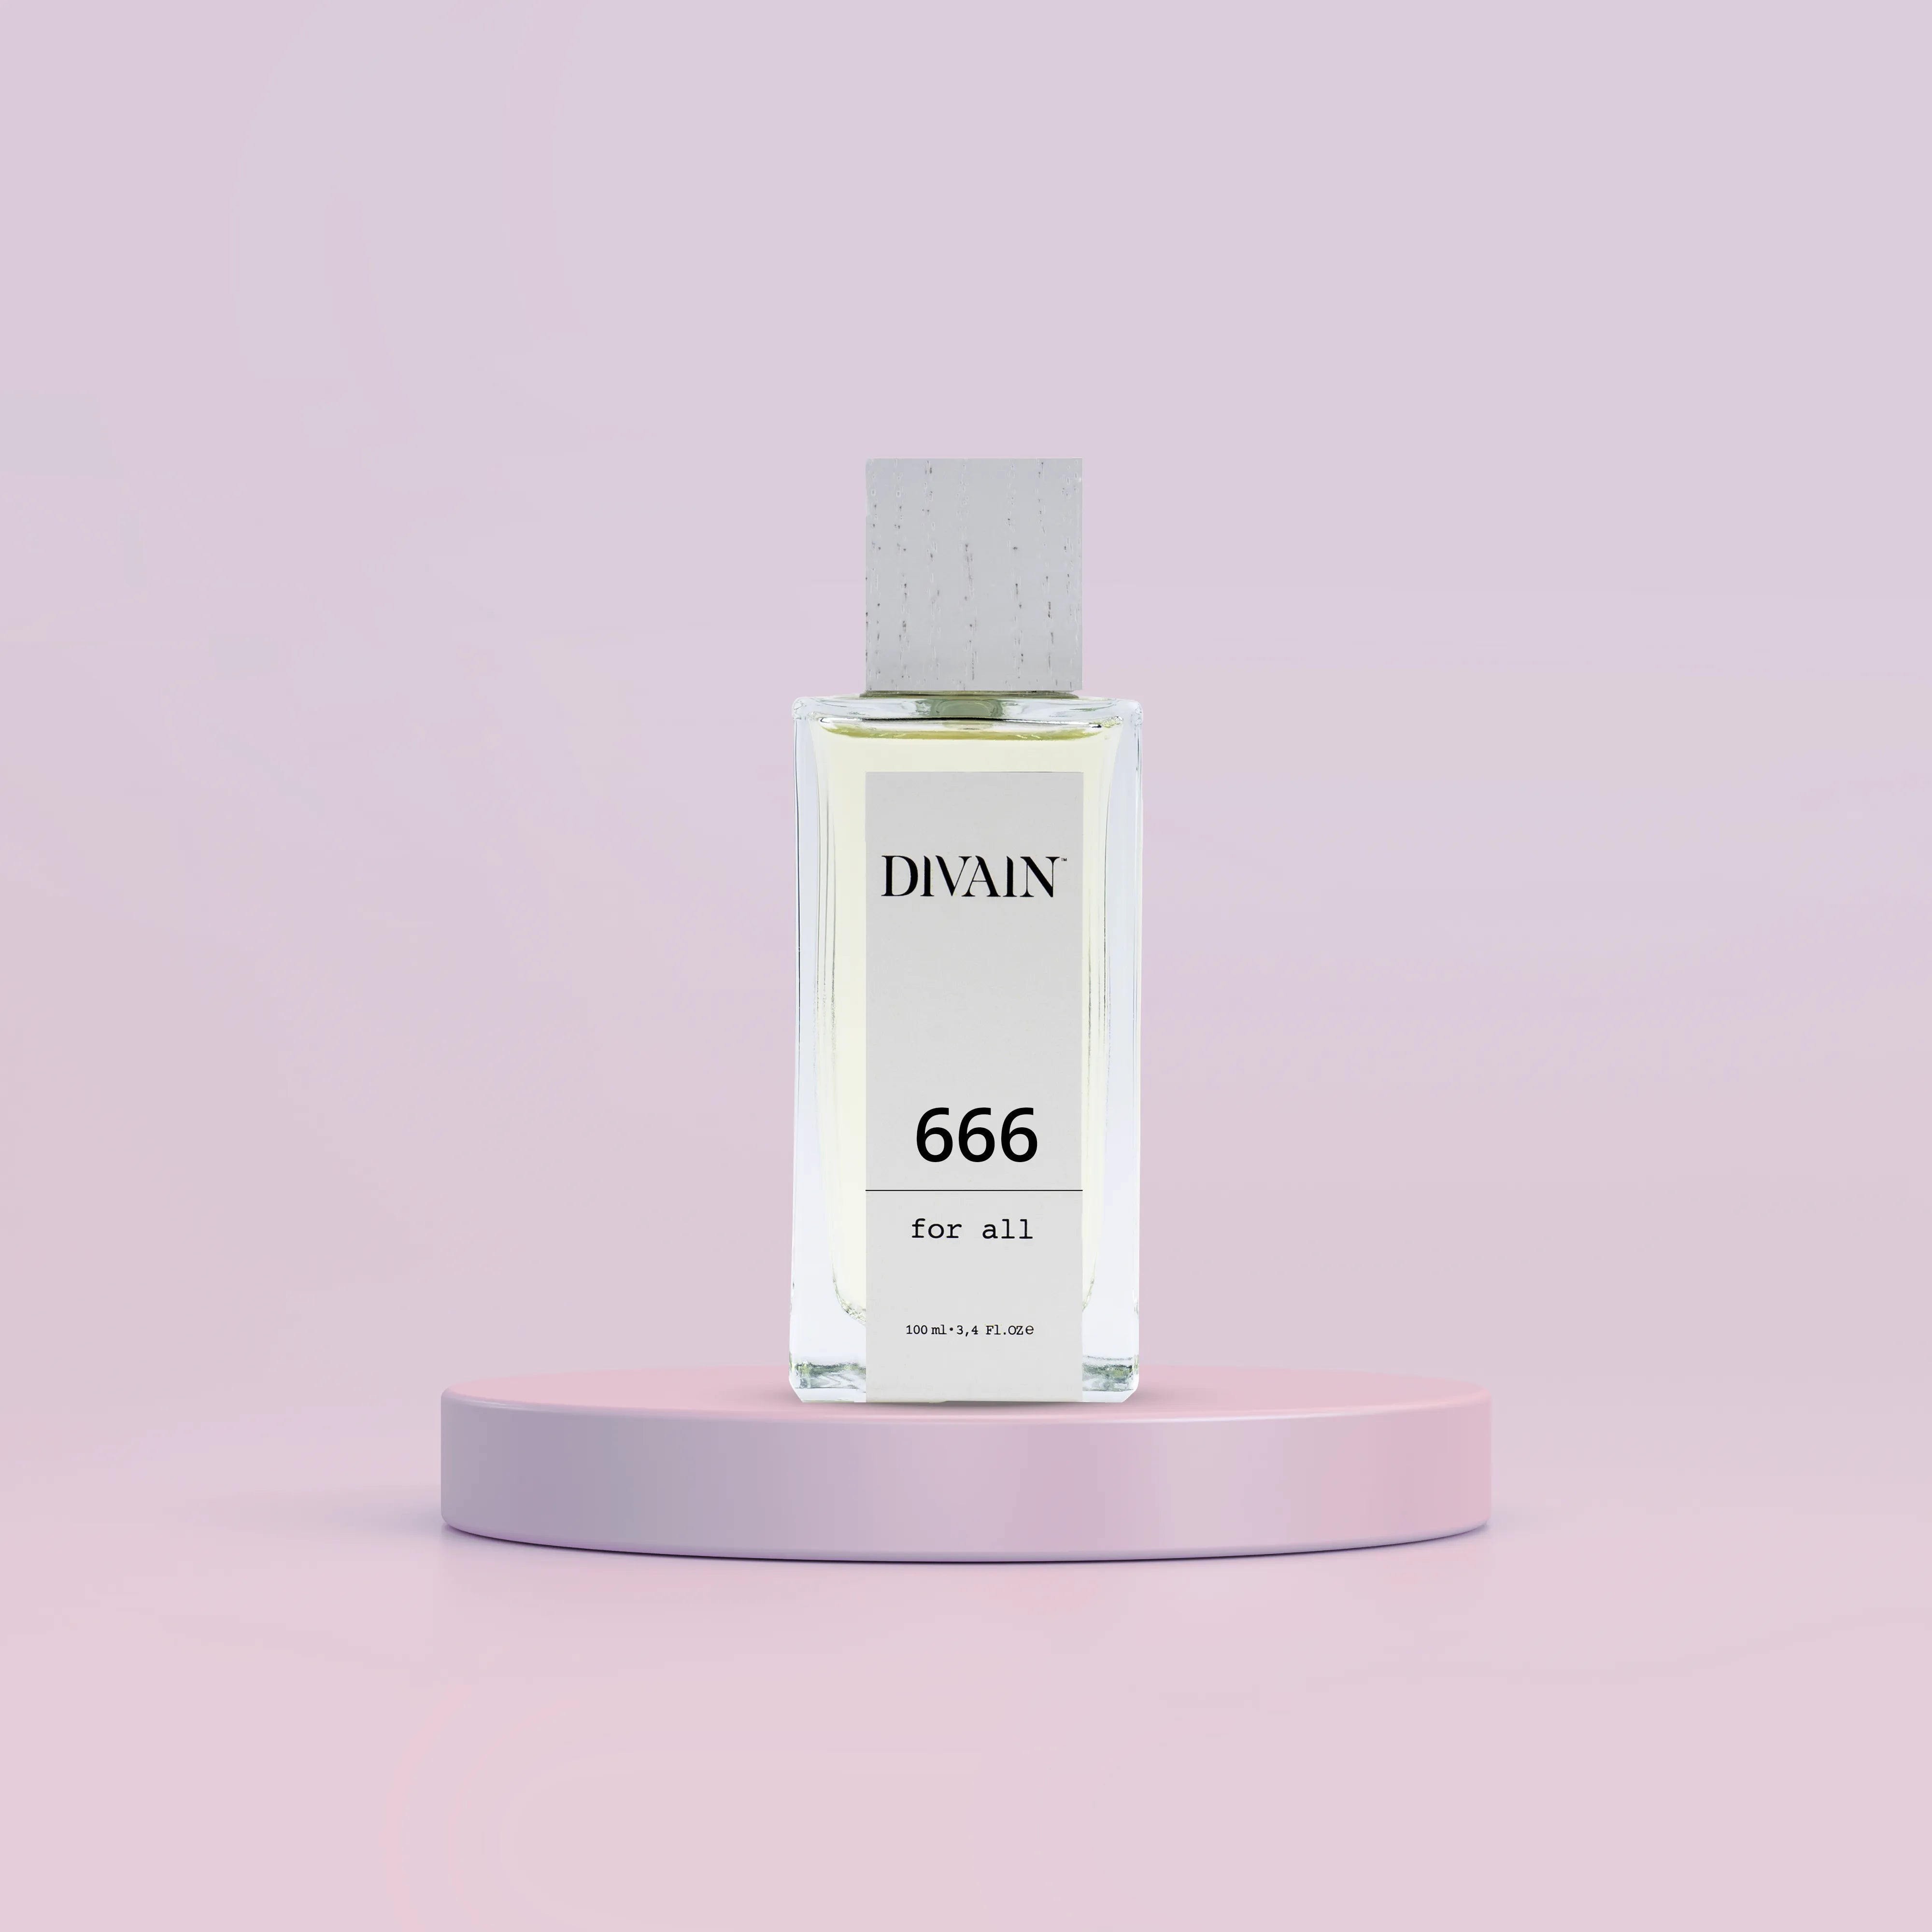 DIVAIN-666 | Similar a Silver Mountain Water de Creed | Unisex